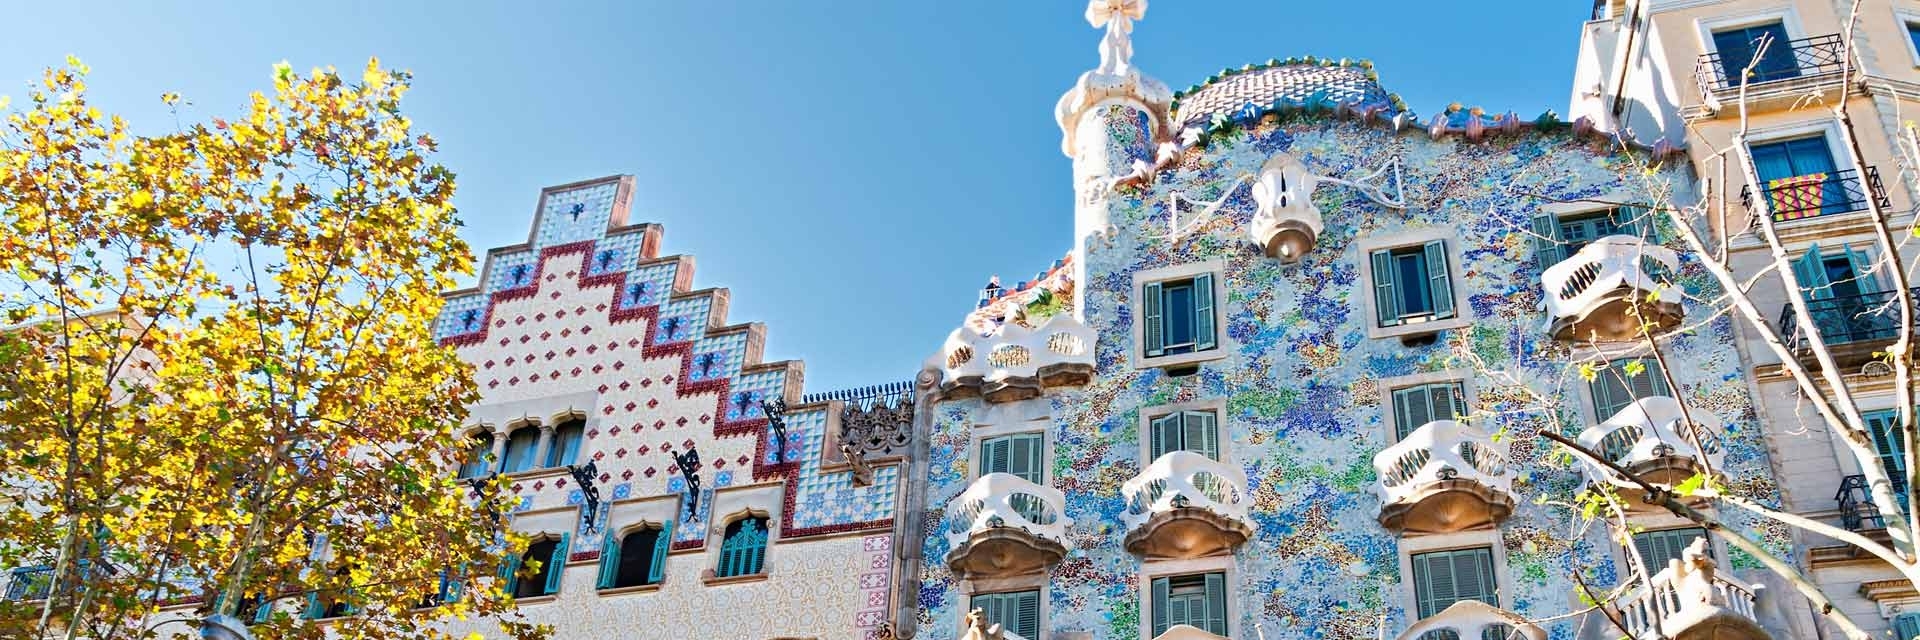 Casa Batlló là một tòa nhà đầy màu sắc vô cùng ấn tượng 